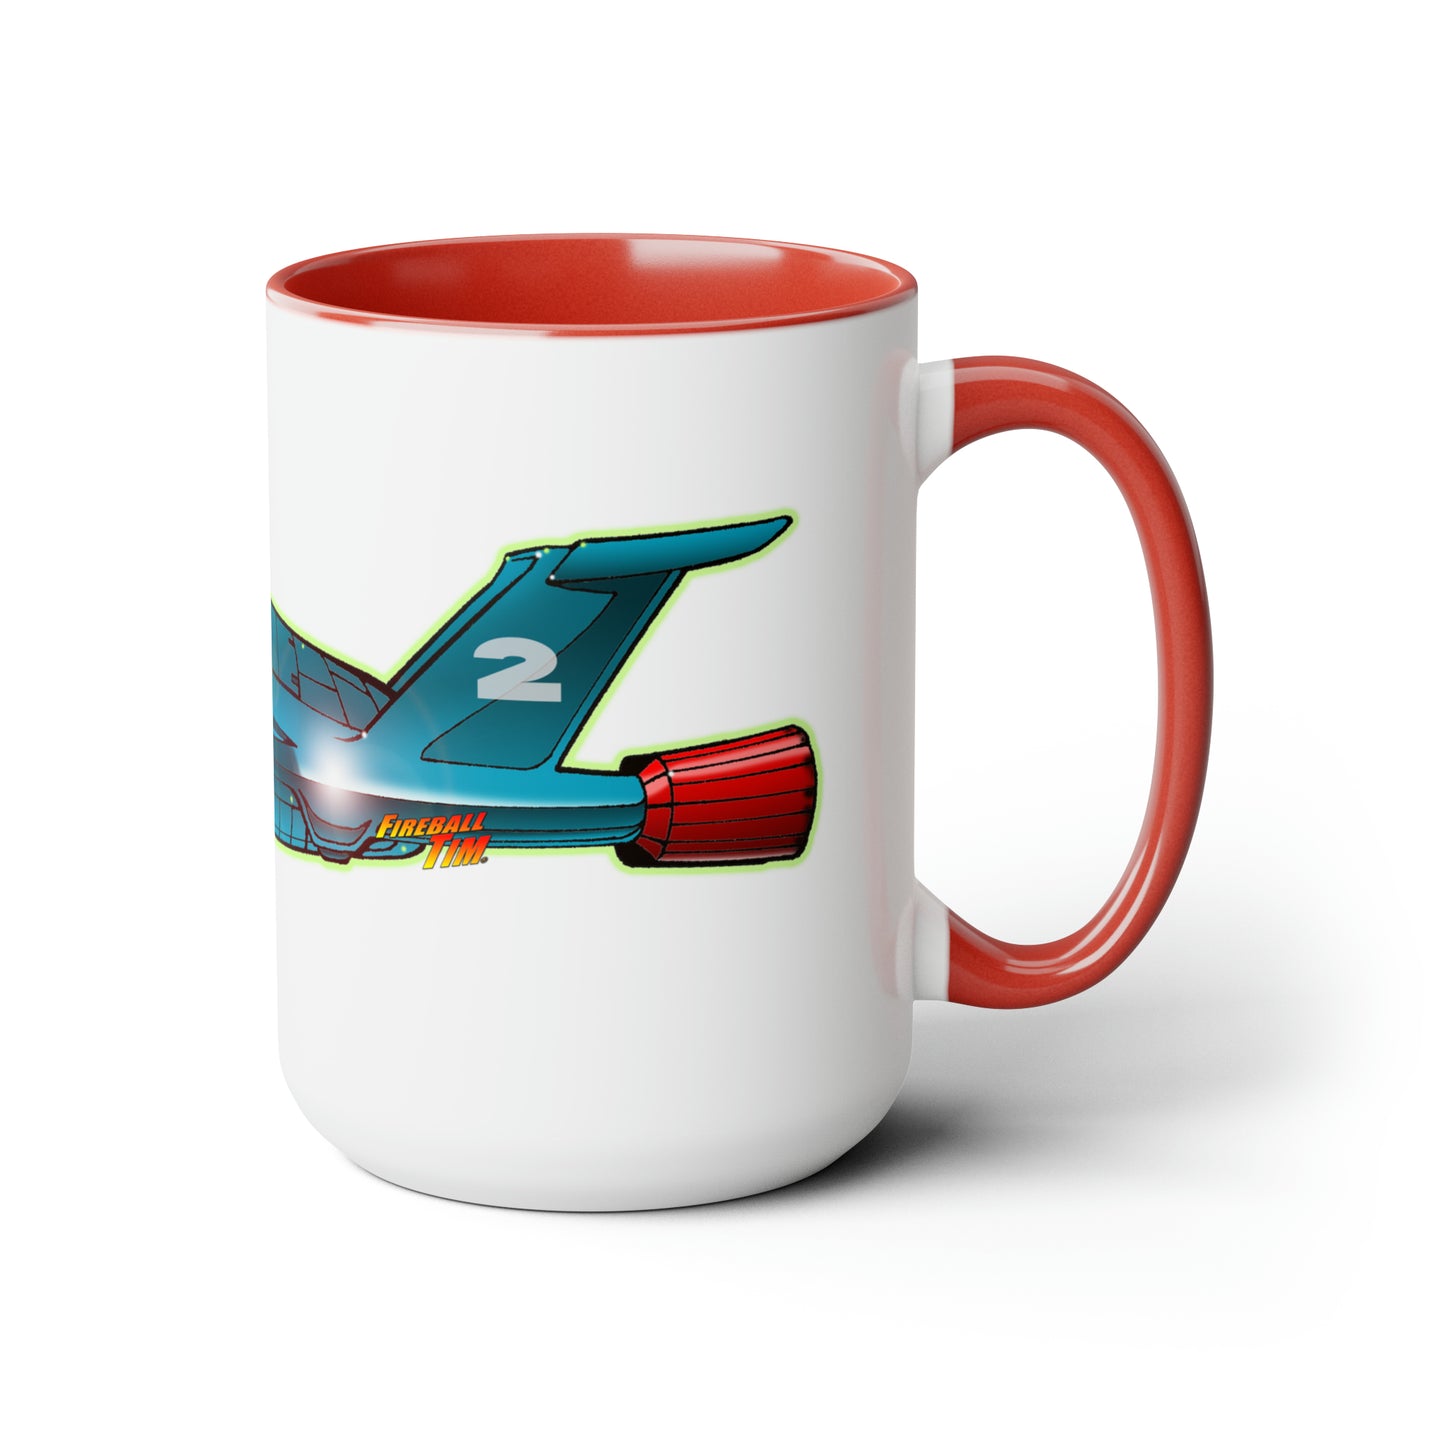 THUNDERBIRD 2 Spaceship Coffee Mug 15oz